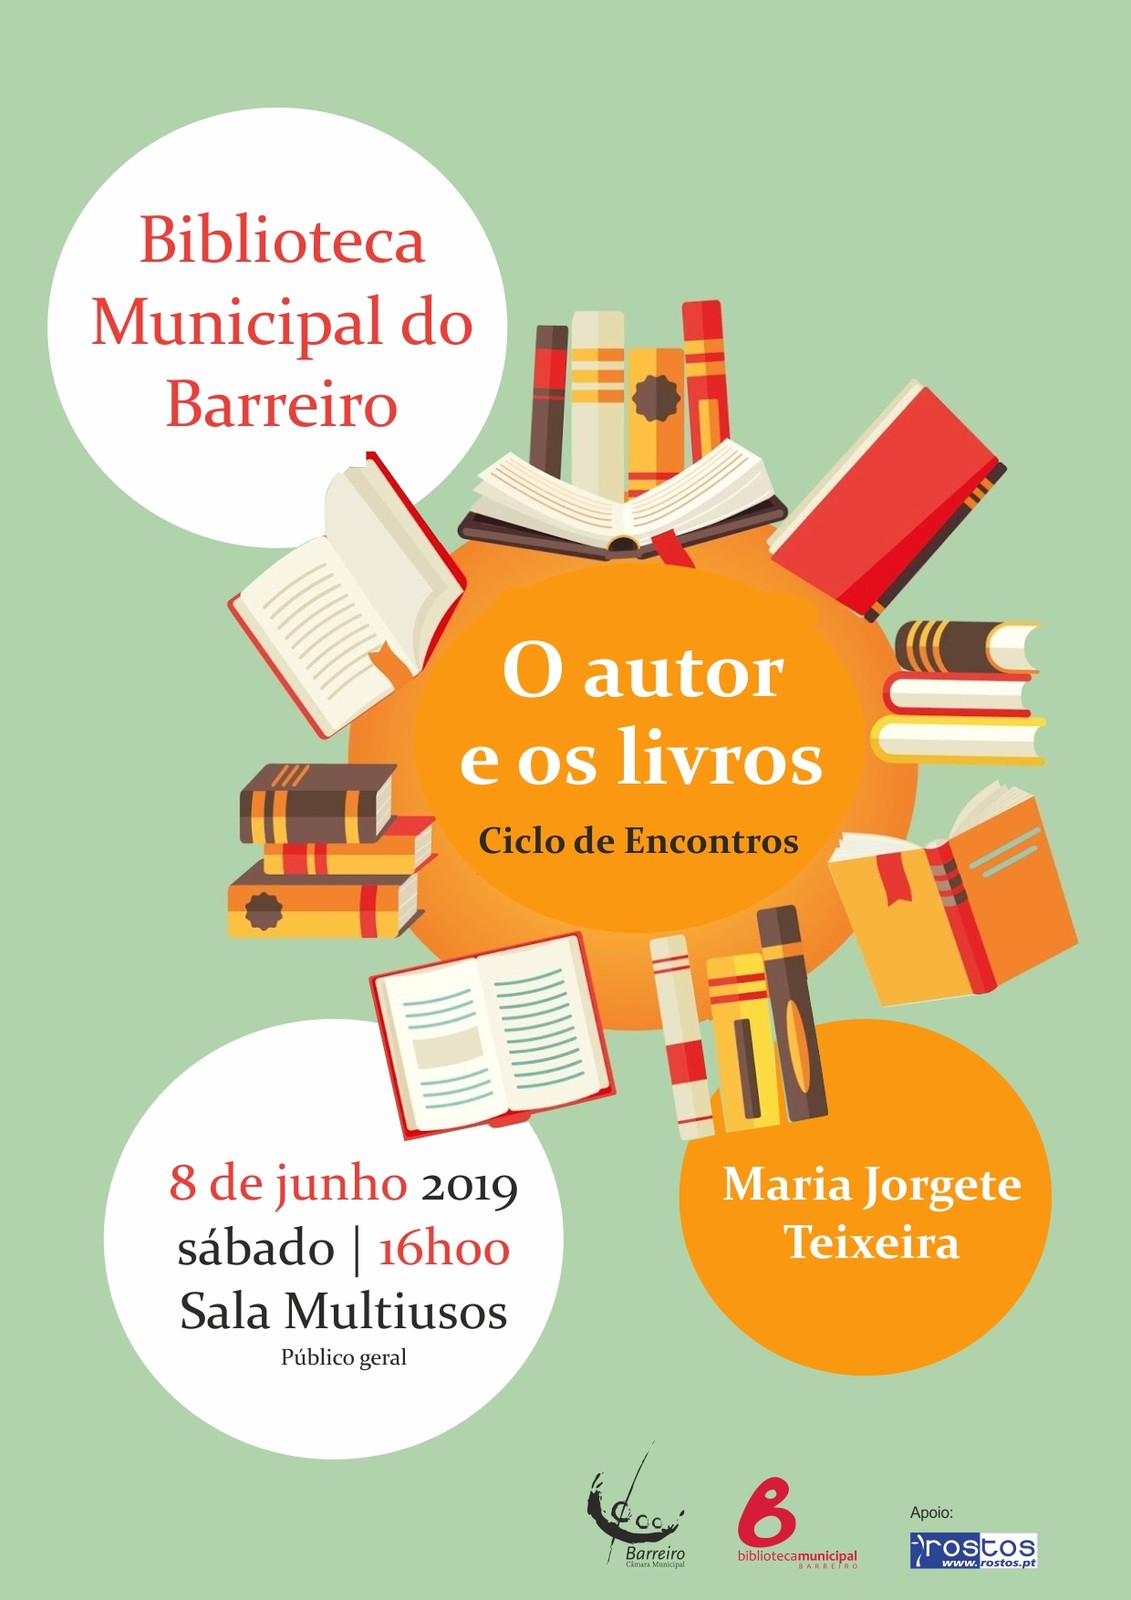 Ciclo de Encontros: “O Autor e os livros” com Maria Jorgete Teixeira